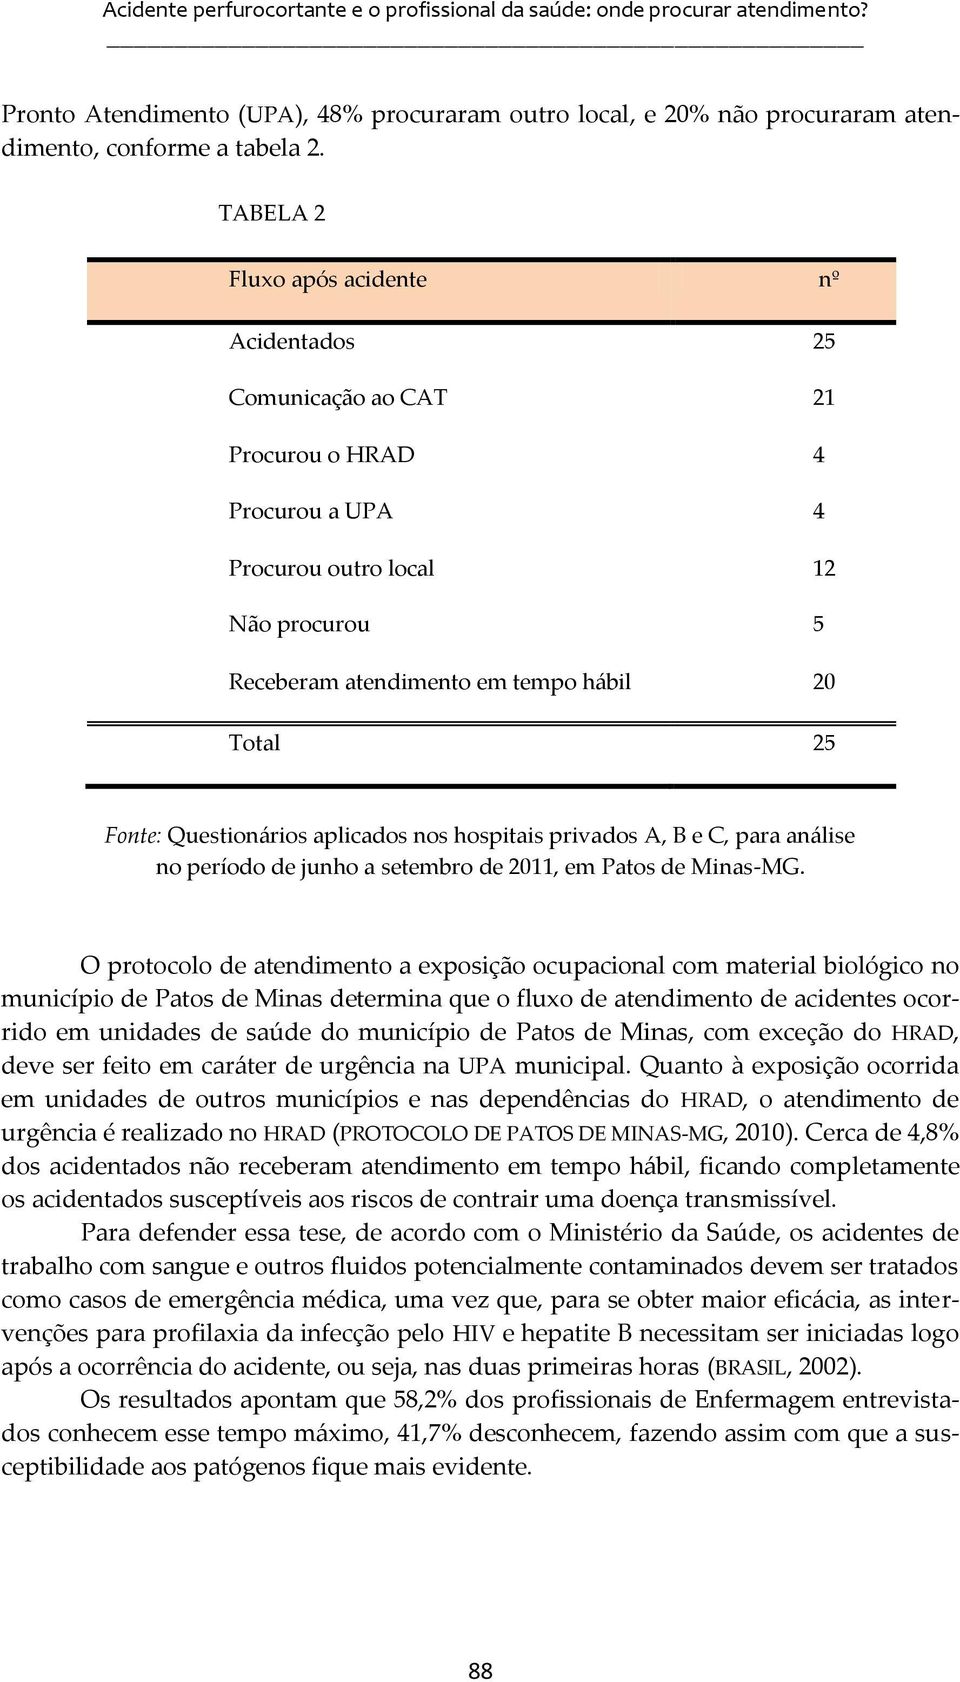 Questionários aplicados nos hospitais privados A, B e C, para análise no período de junho a setembro de 2011, em Patos de Minas-MG.